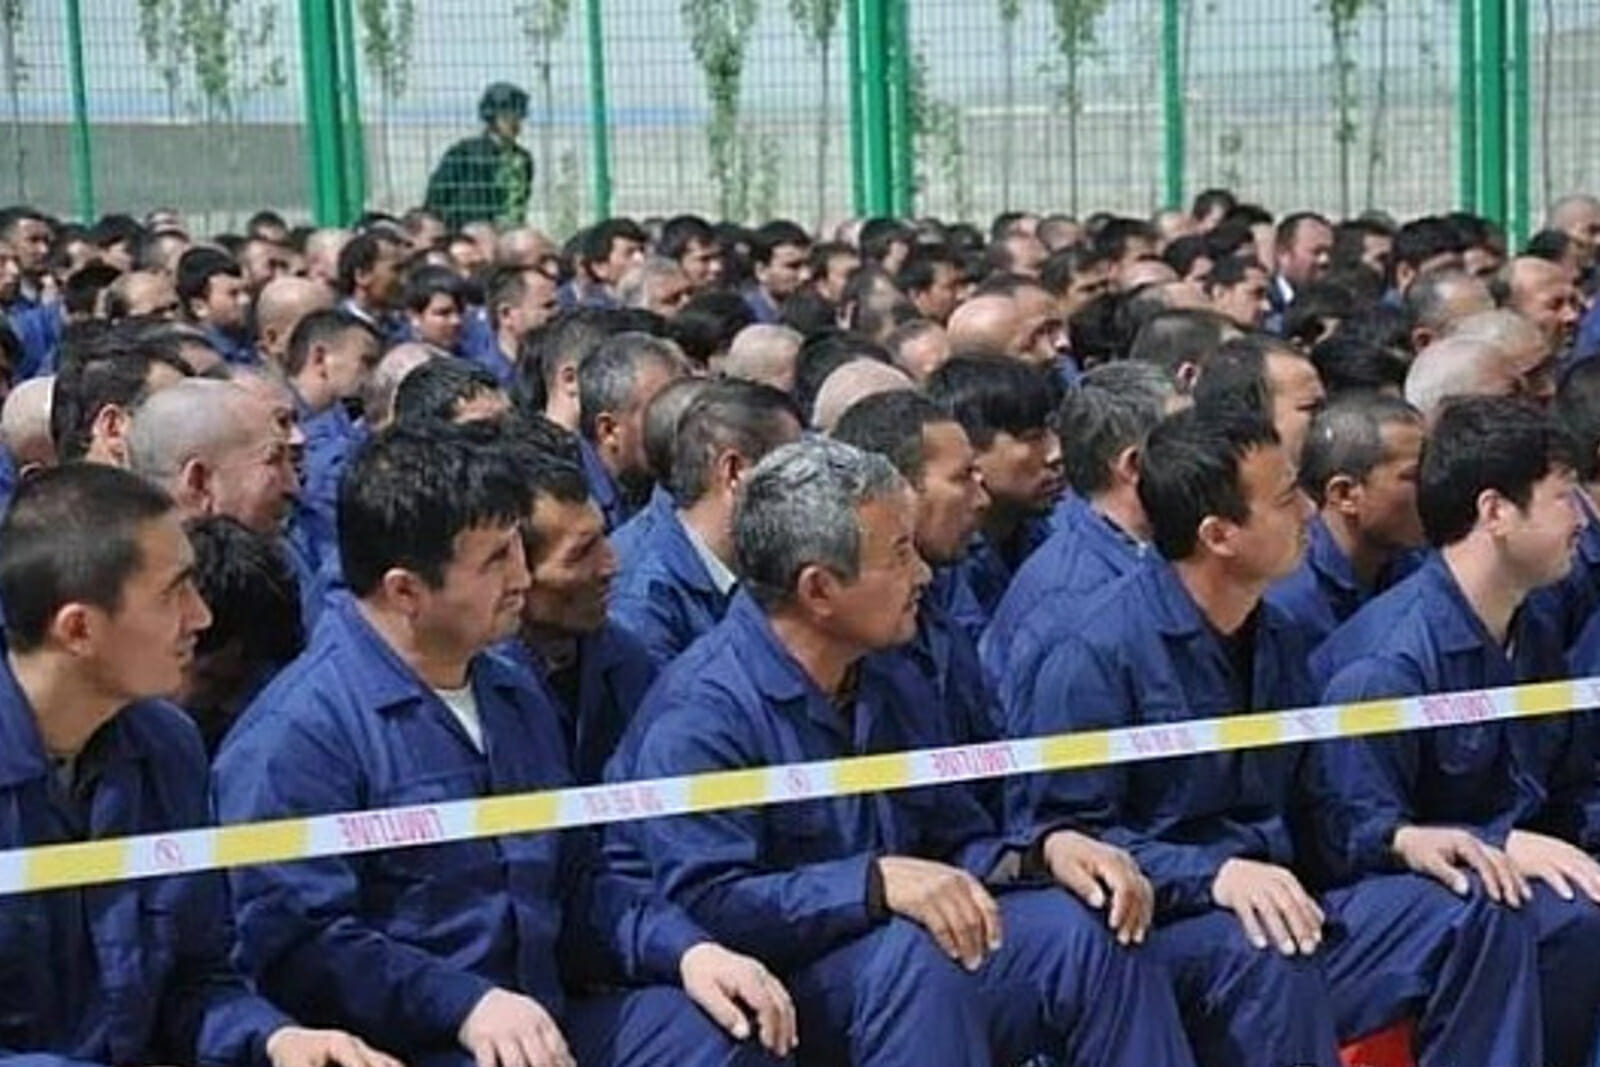 Los uigures son enviados a los llamados "campos de reeducación", en los cuales se les obliga a olvidar sus tradiciones y orígenes étnicos. Foto: dominio público